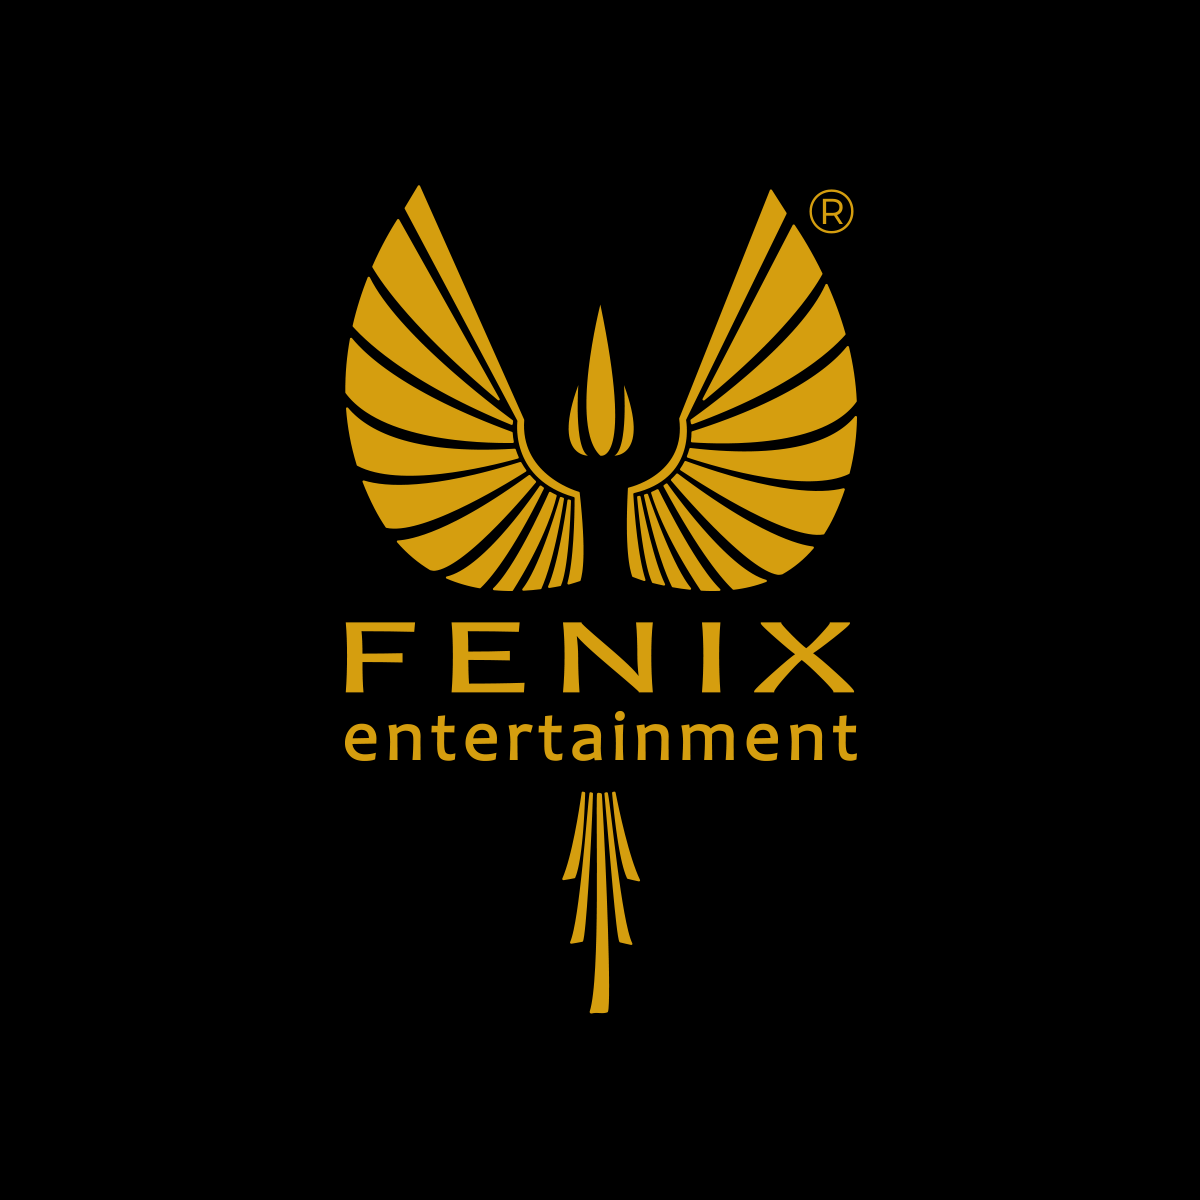 Tutte le novità di Fenix Entertainment. Casa di produzione cinematografica, etichetta discografica e azienda di comunicazione on-line/off-line.
#BurracoFatale